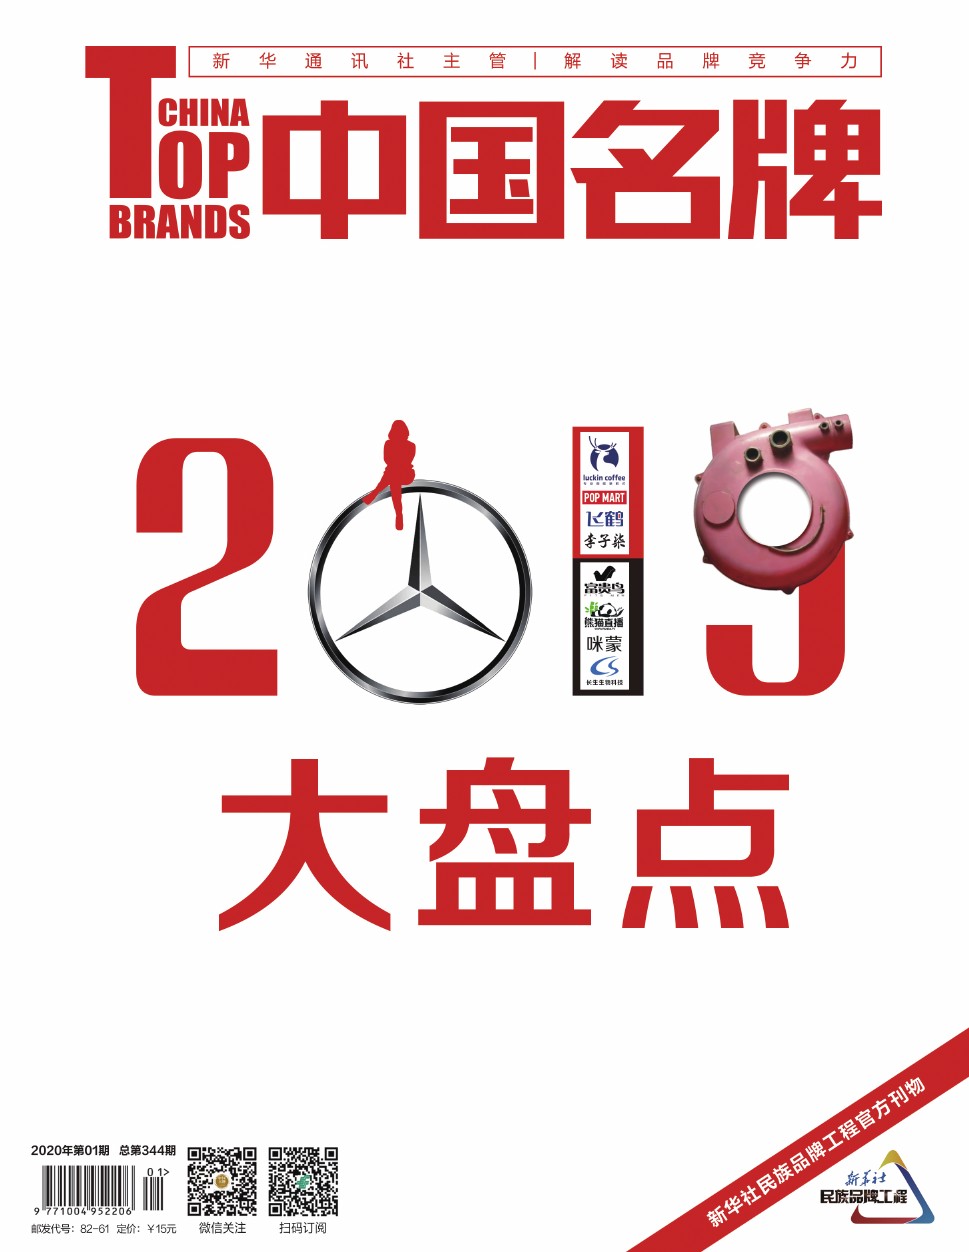 《中国名牌》电子杂志2020年第1期